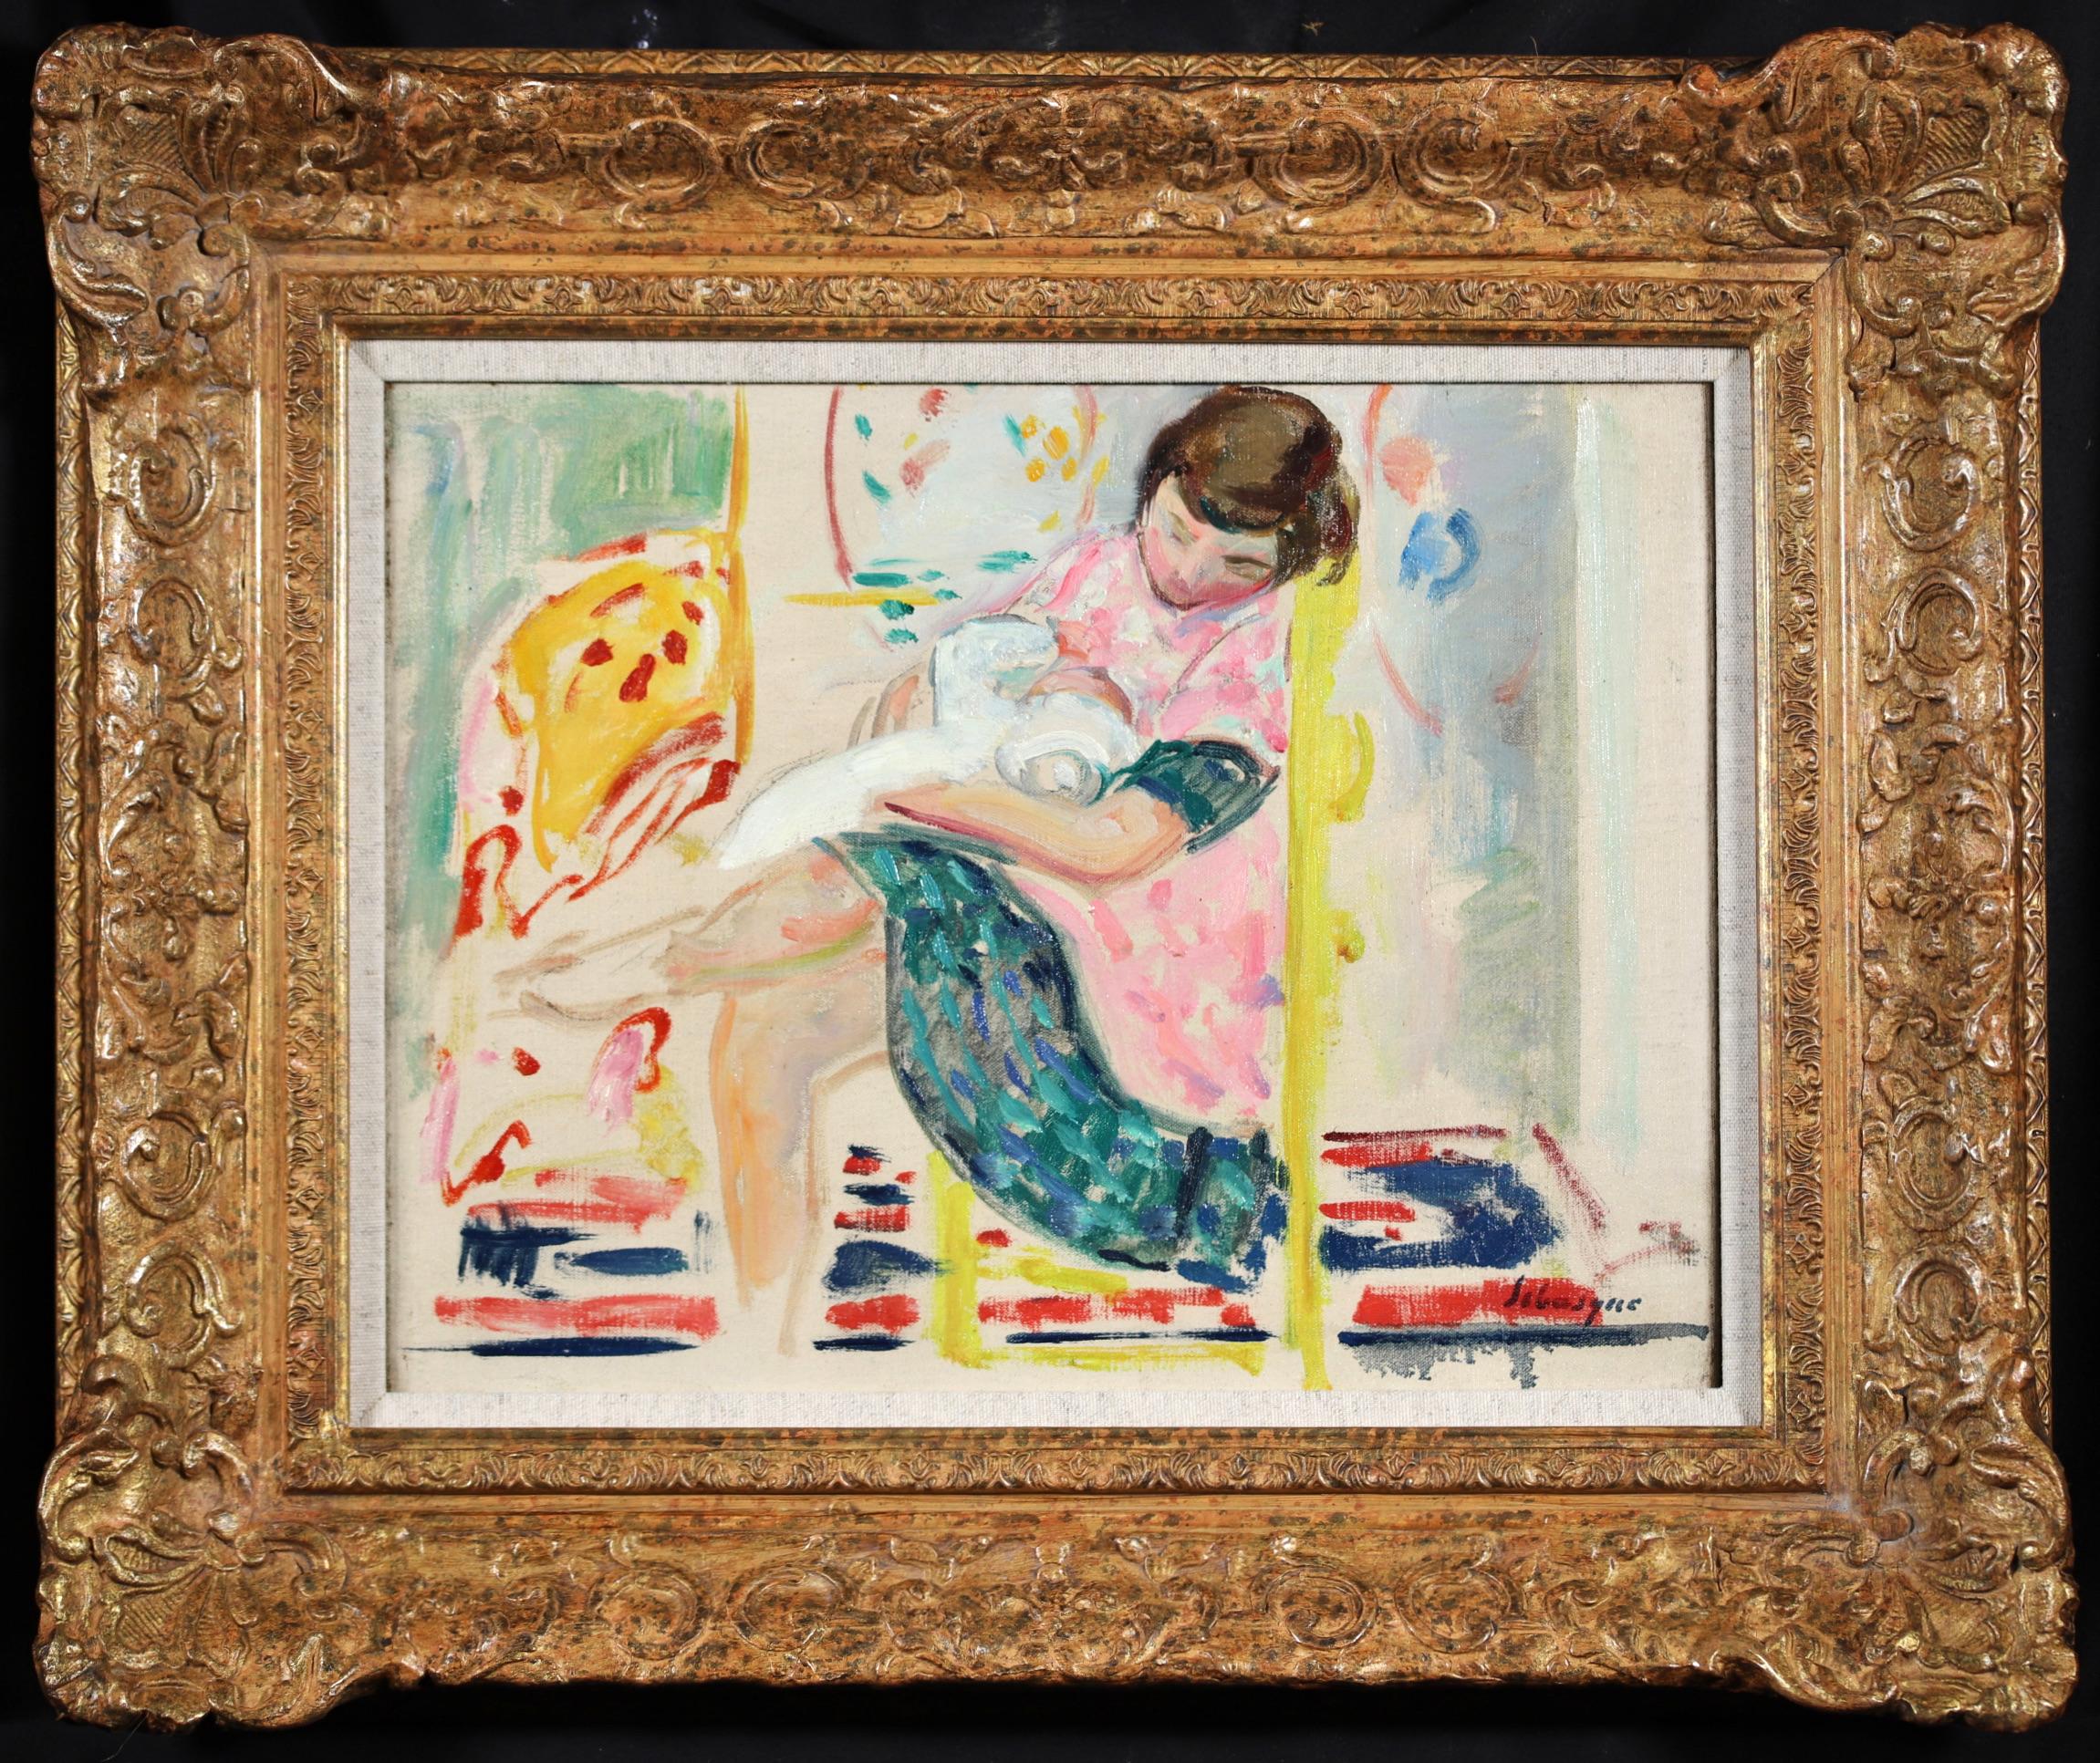 Huile figurative sur toile signée vers 1910 par le peintre post impressionniste français Henri Lebasque. L'œuvre représente une mère assise sur un change jaune en train de nourrir son jeune bébé.

Signature :
Signé en bas à droite

Dimensions